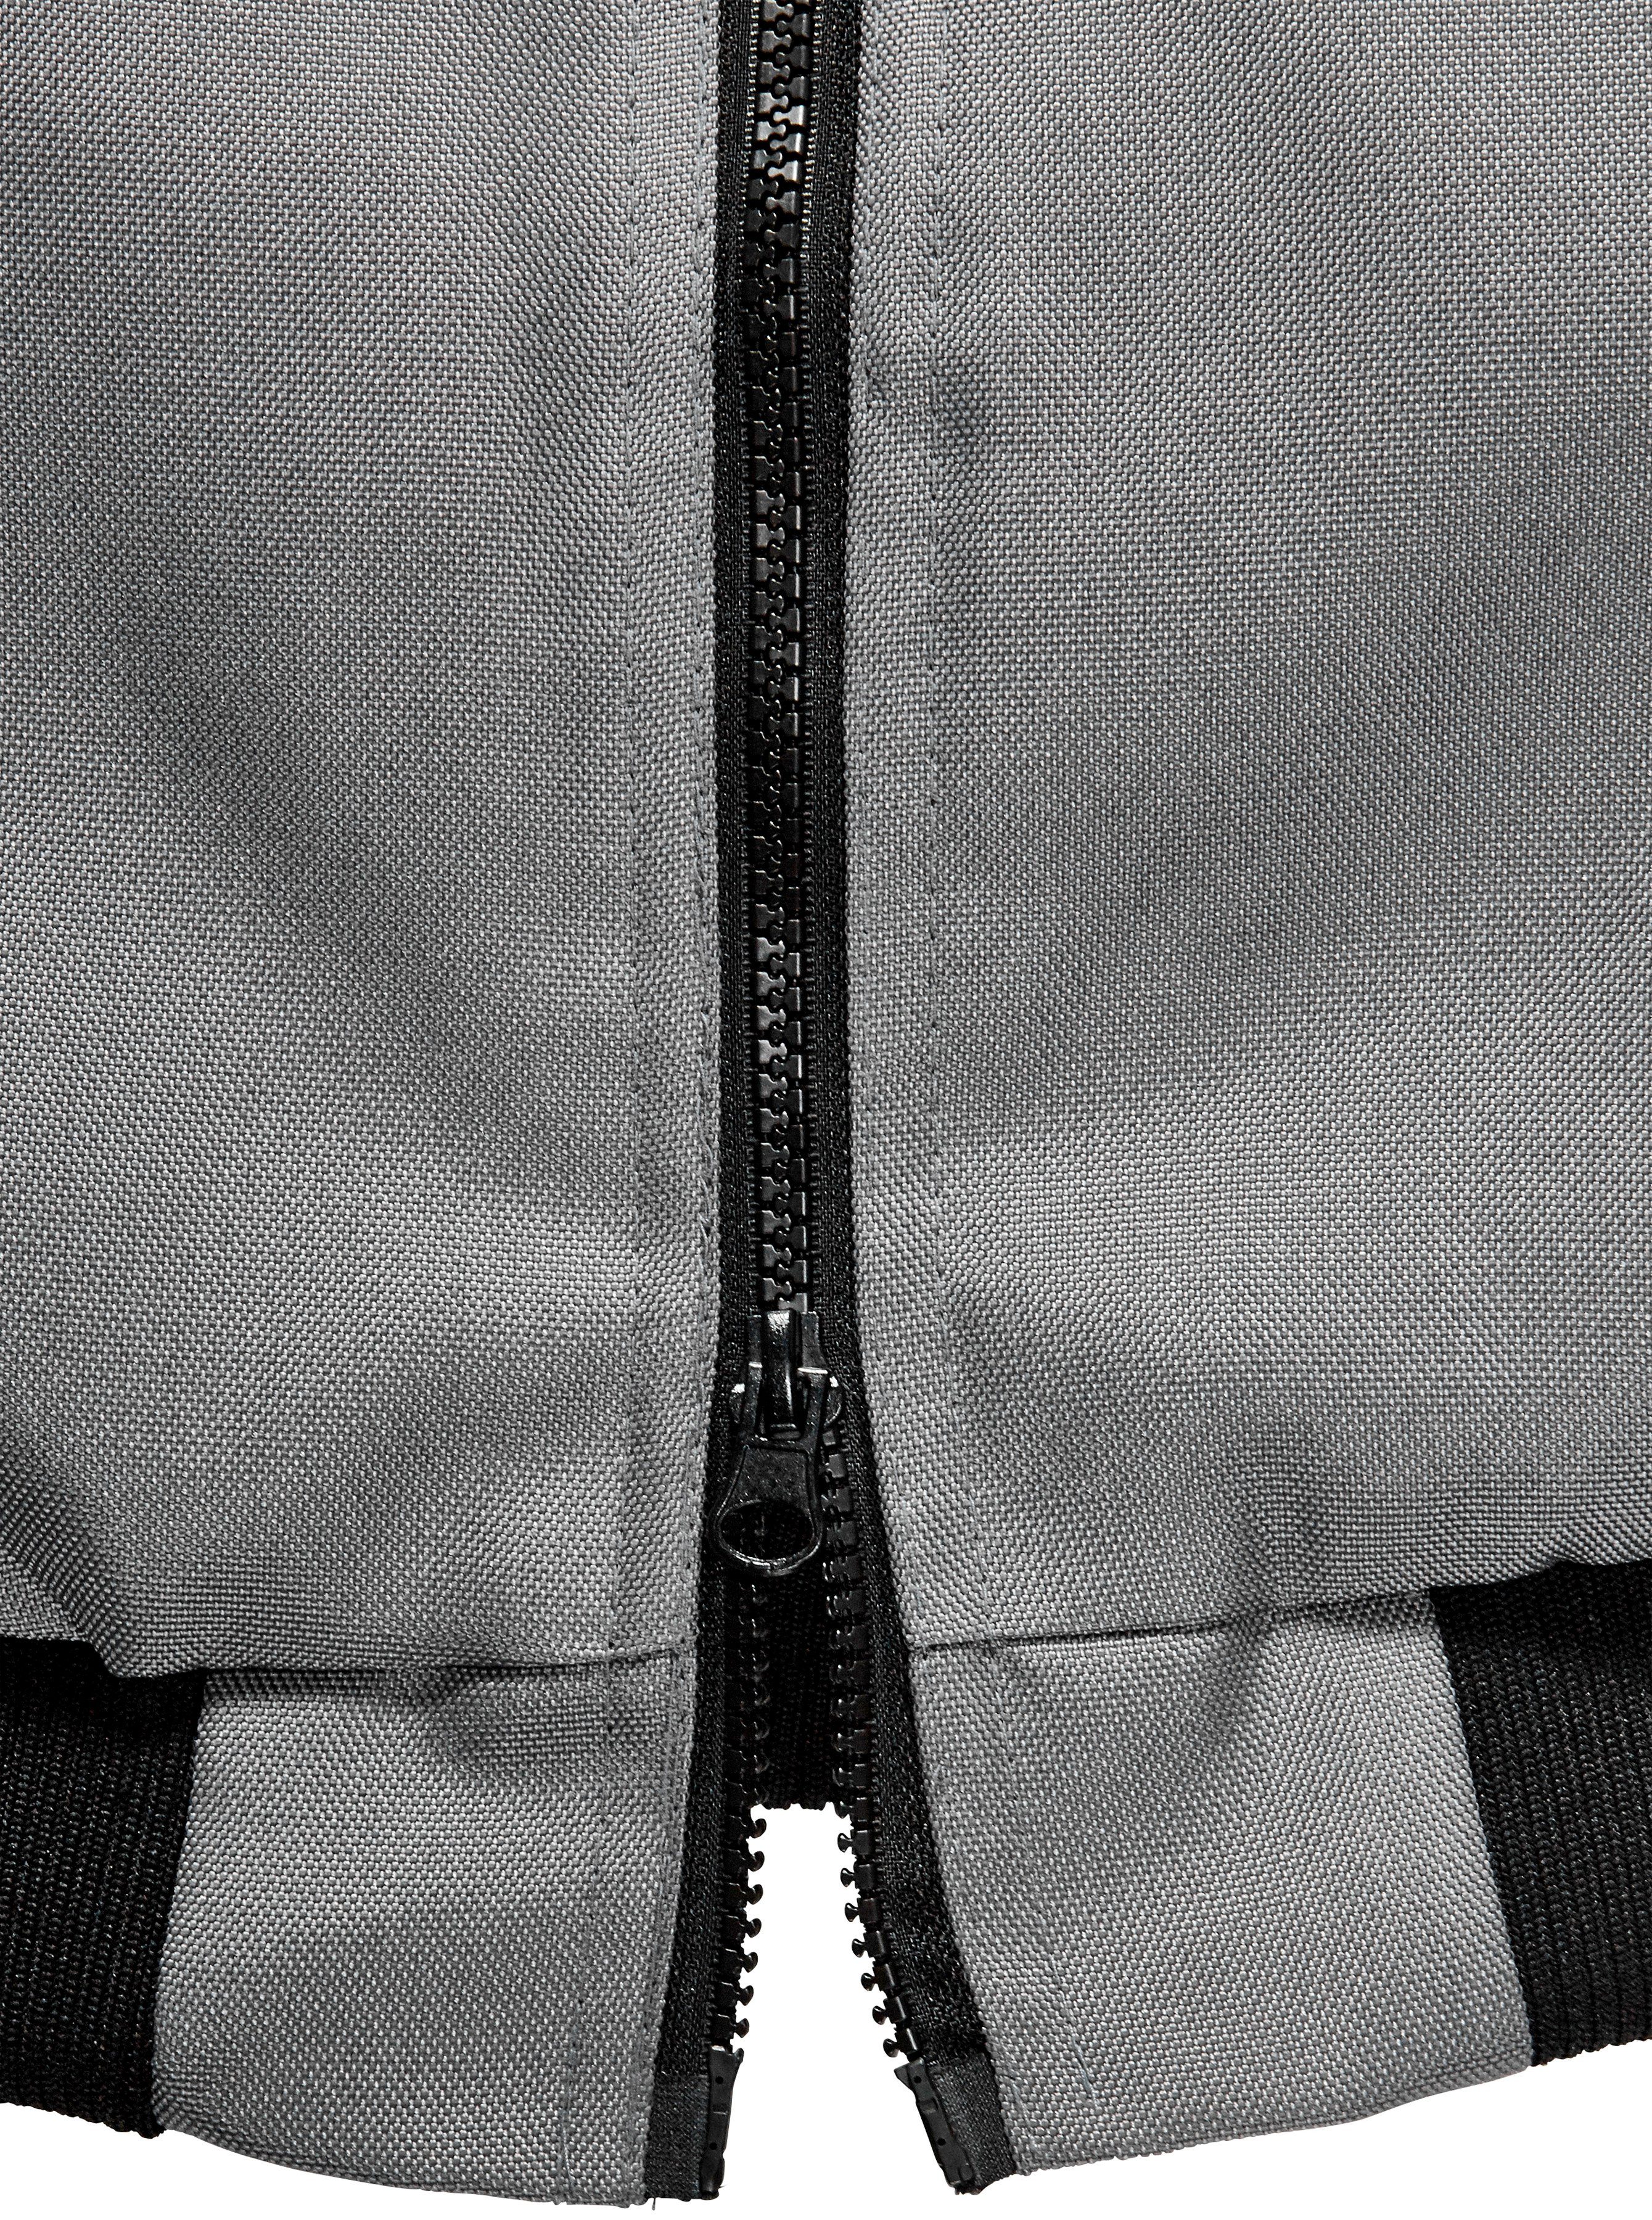 Reflexelemente Arbeitsjacke grau-schwarz more safety& Extreme